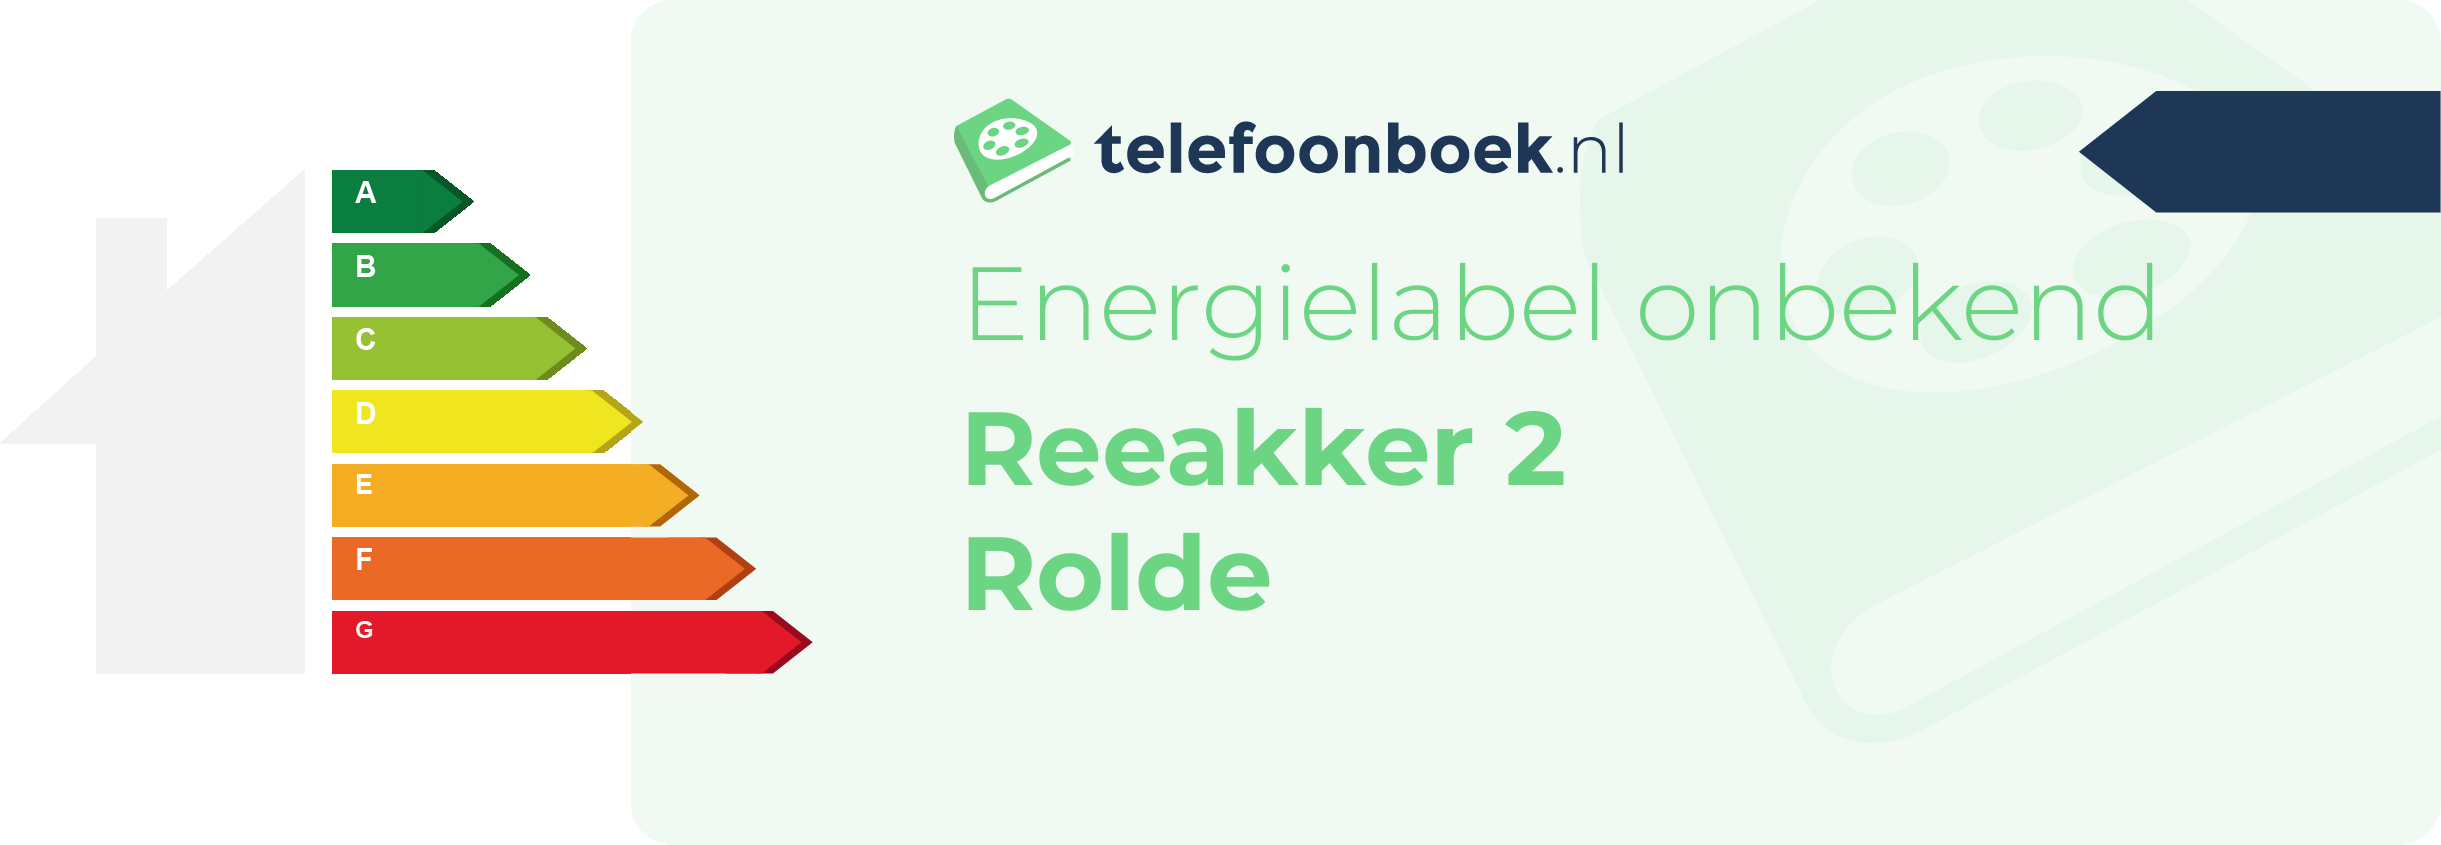 Energielabel Reeakker 2 Rolde